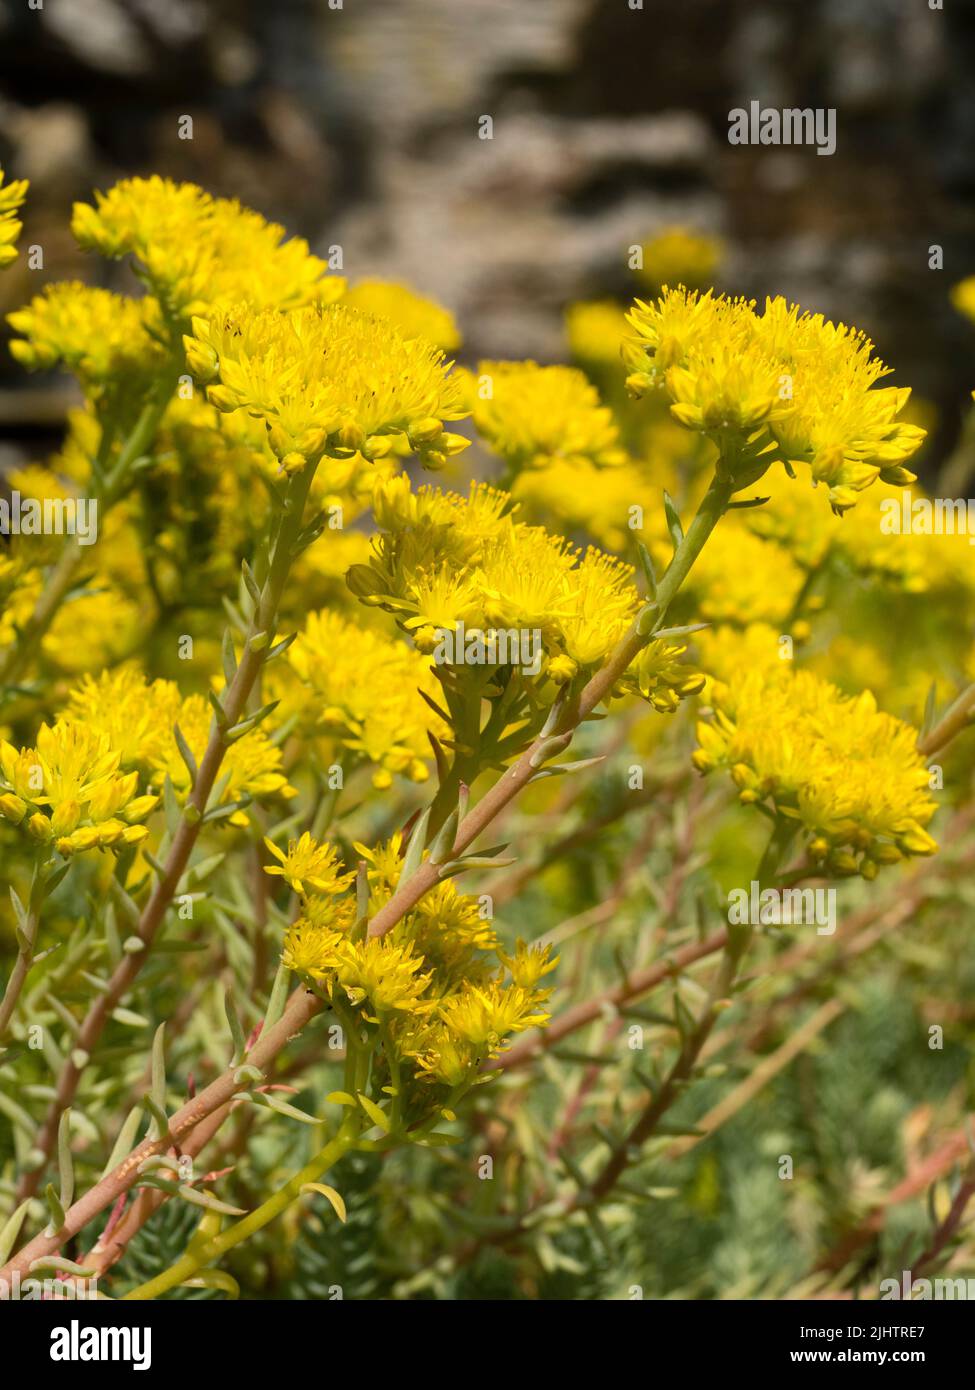 Fleurs jaunes d'été de la moquette, glacous folied endurci succulent, Sedum hispanicum 'Blue Carpet', stonecrop espagnol Banque D'Images